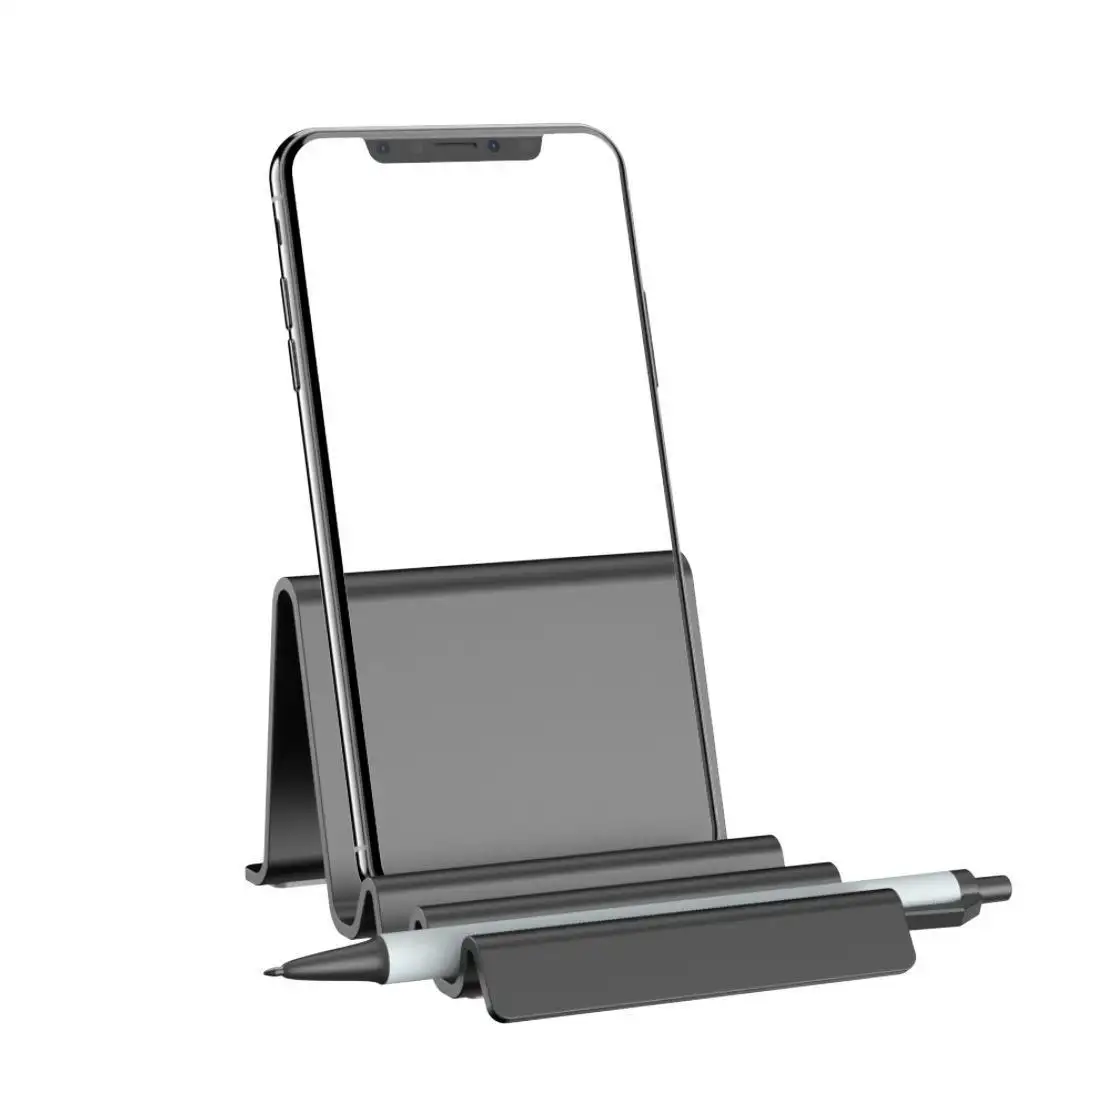 波形最新デザインのポータブルミニデスクトッププラスチック携帯電話ホルダーファブレット調節可能なタブレットスタンド